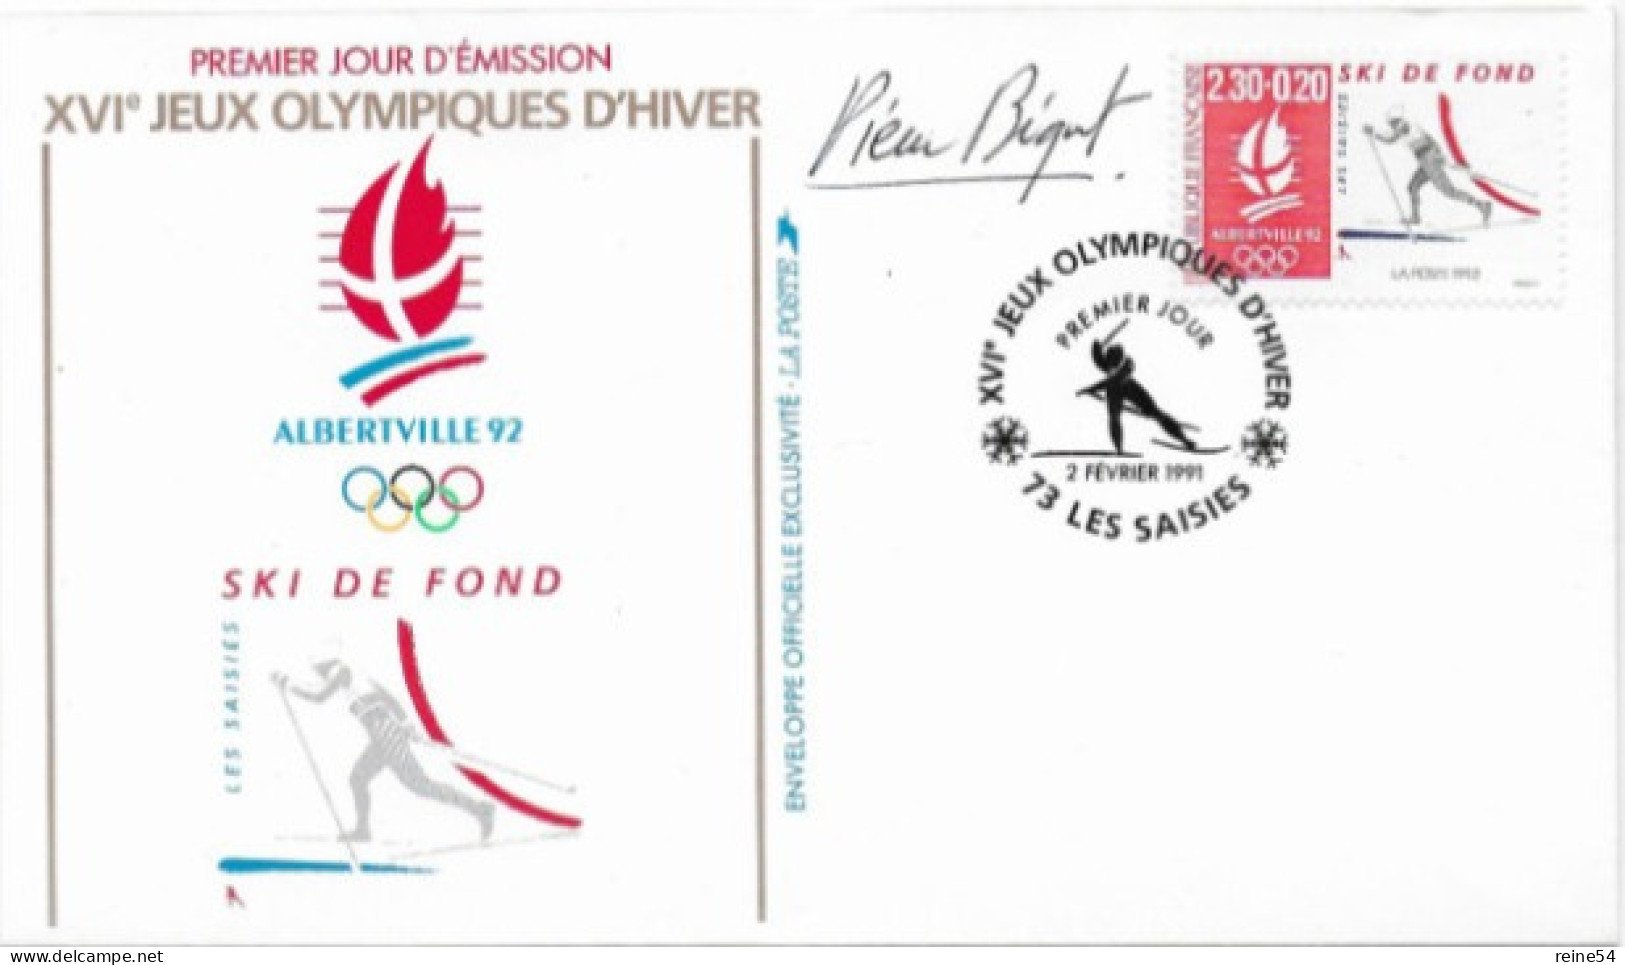 Enveloppe Premier Jour- XVIe Jeux Olympiques D'hiver ALBERVILLE 92 Ski De Fond 2 Févr1991 Les Saisies (73) N° YT 2678 - 1990-1999